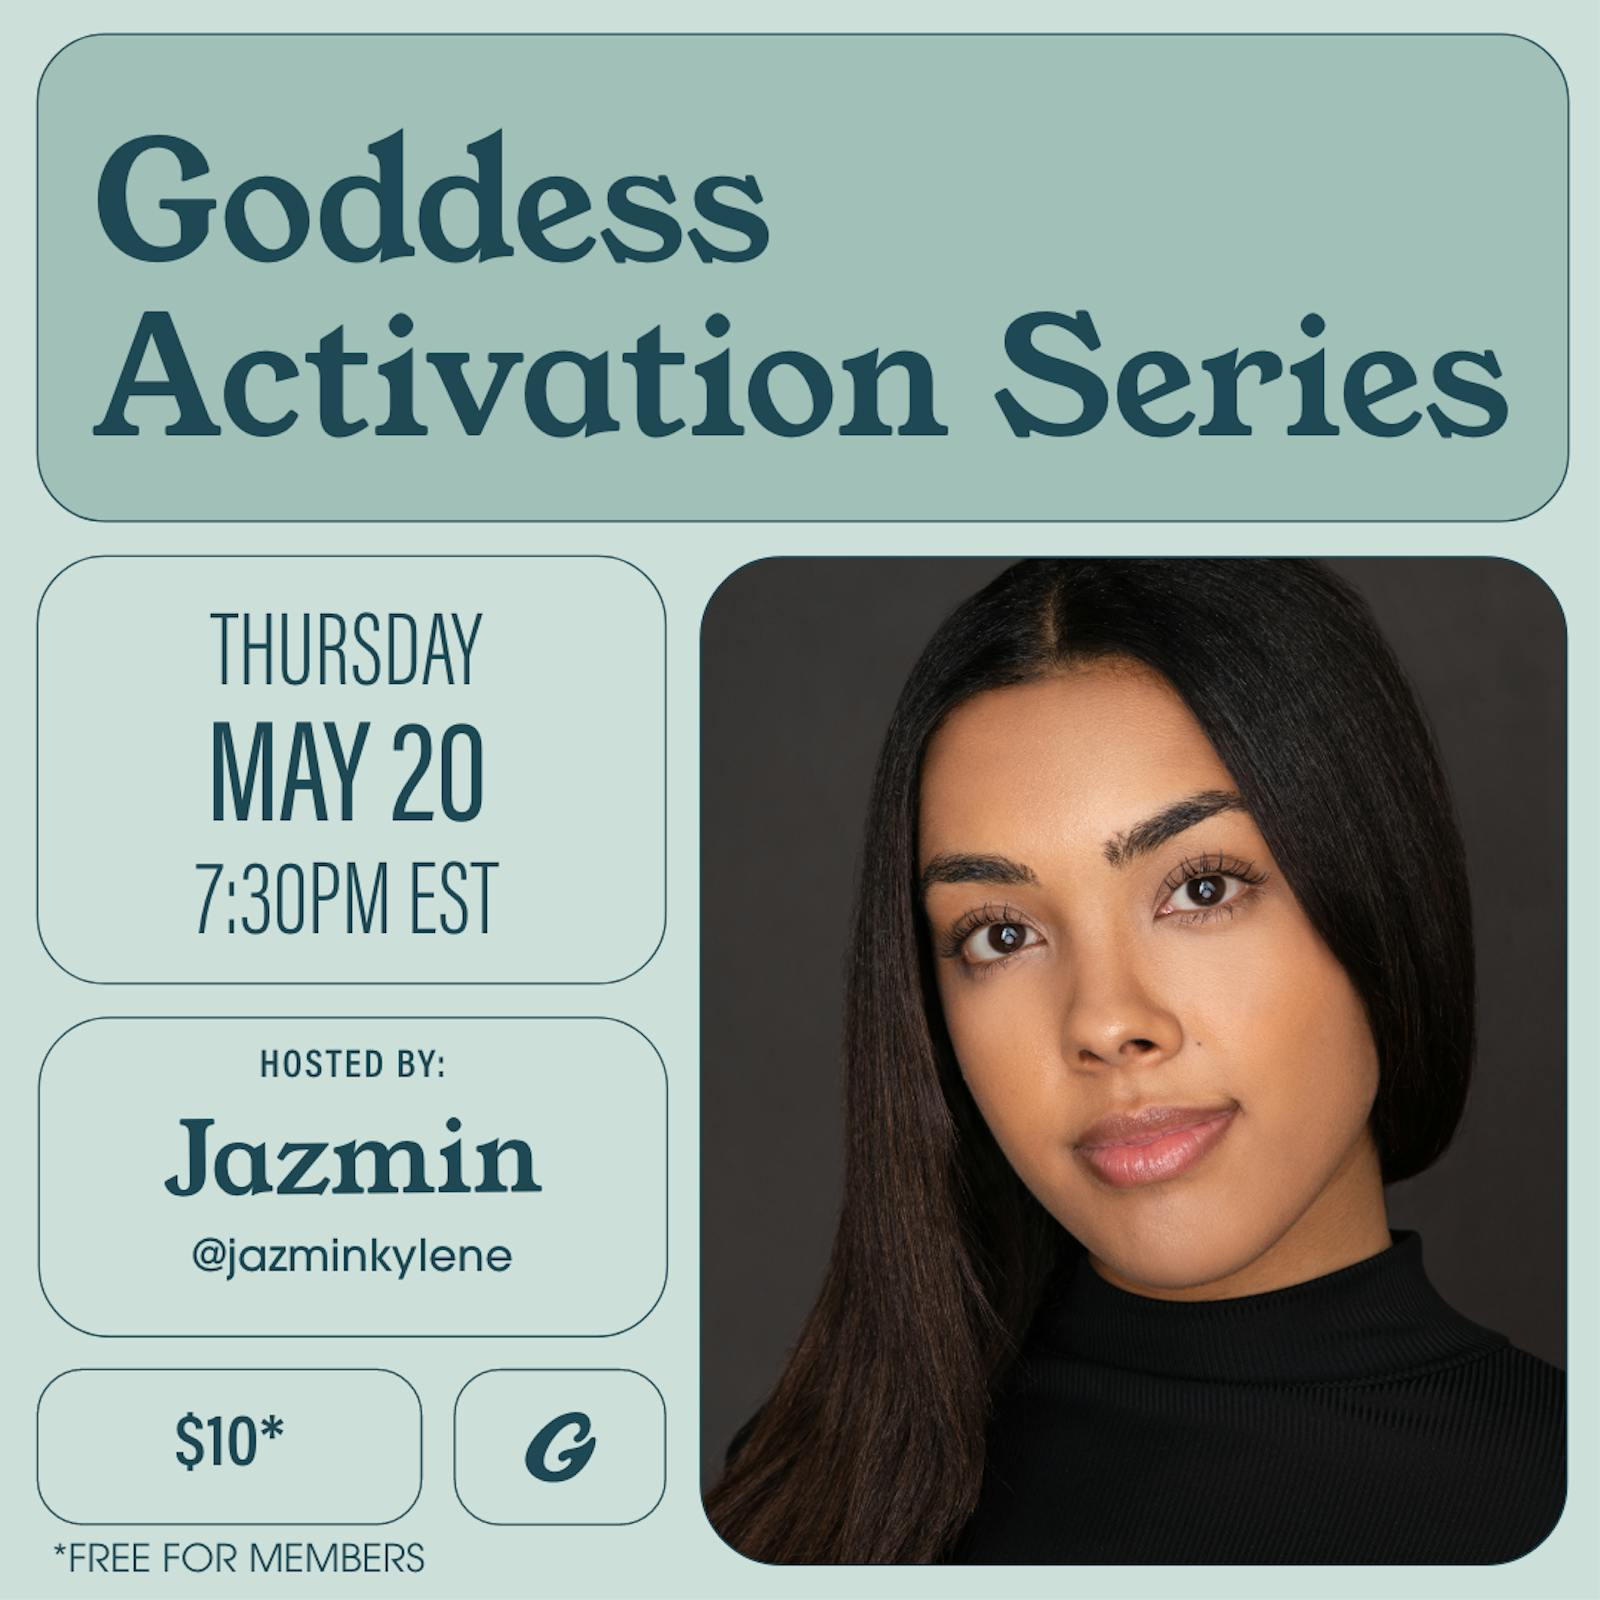 Goddess Activation Series: Goddess Adornment